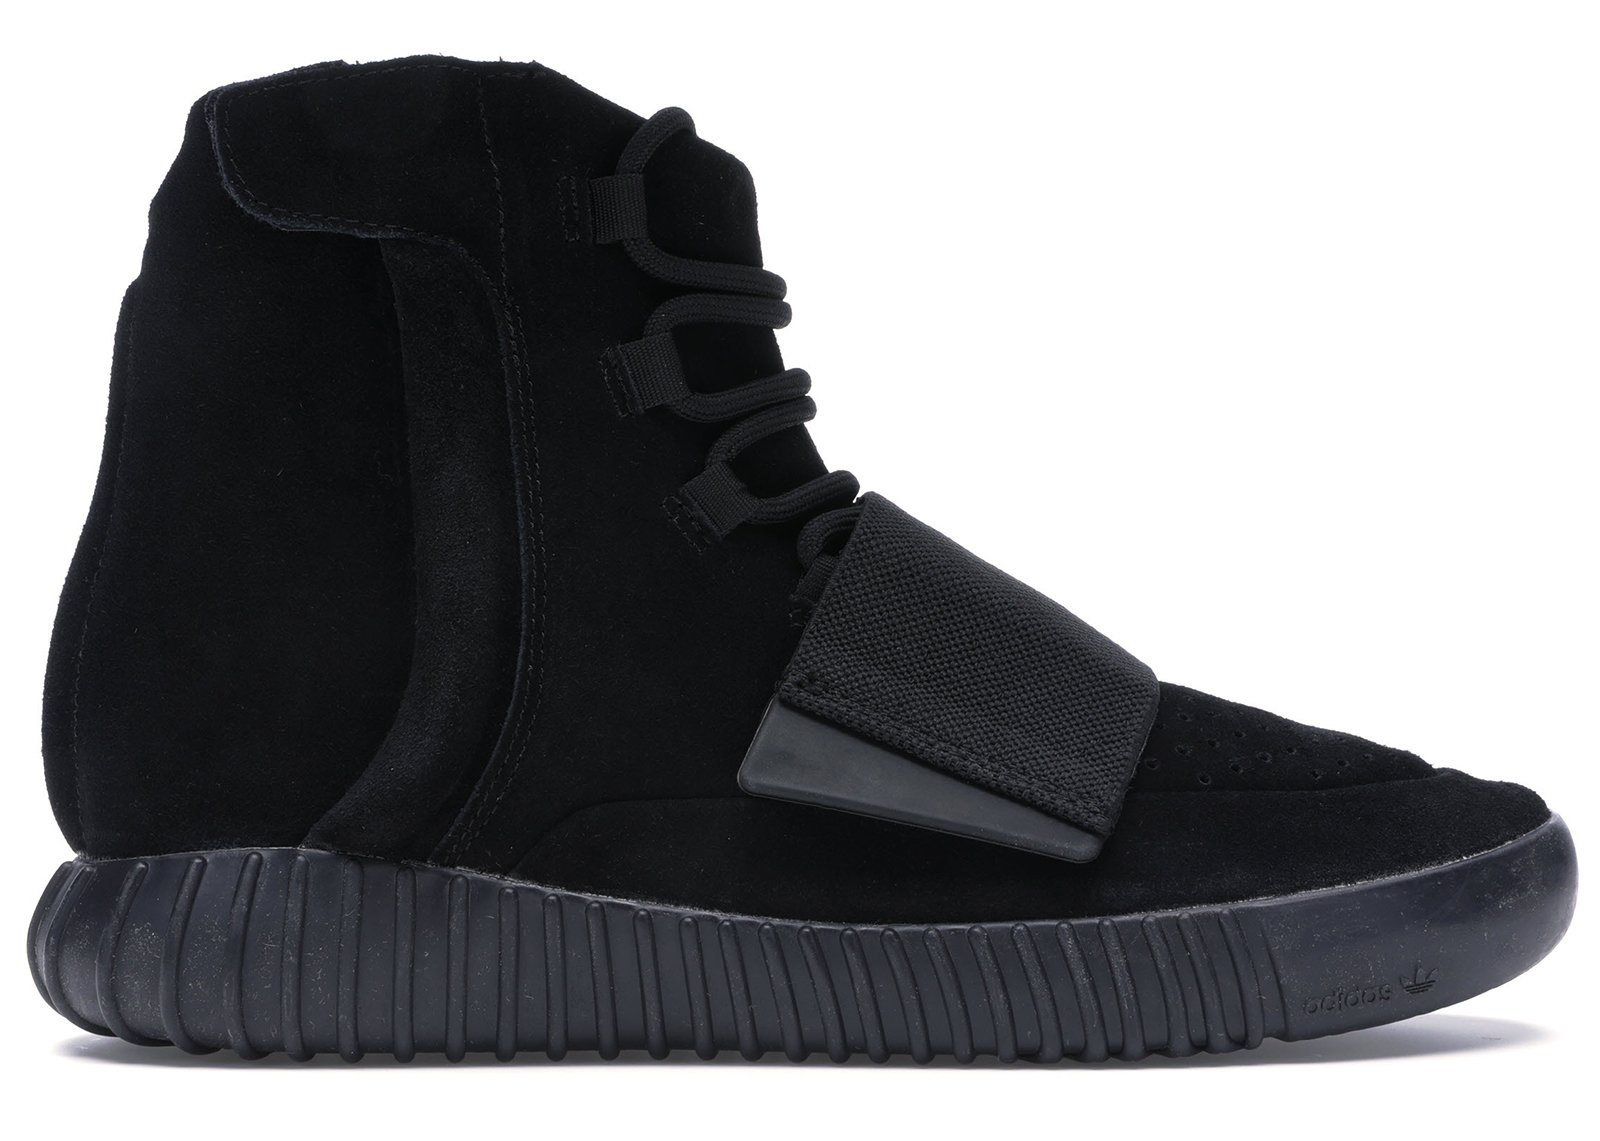 adidas Yeezy Boost 750 Triple Black sneakers